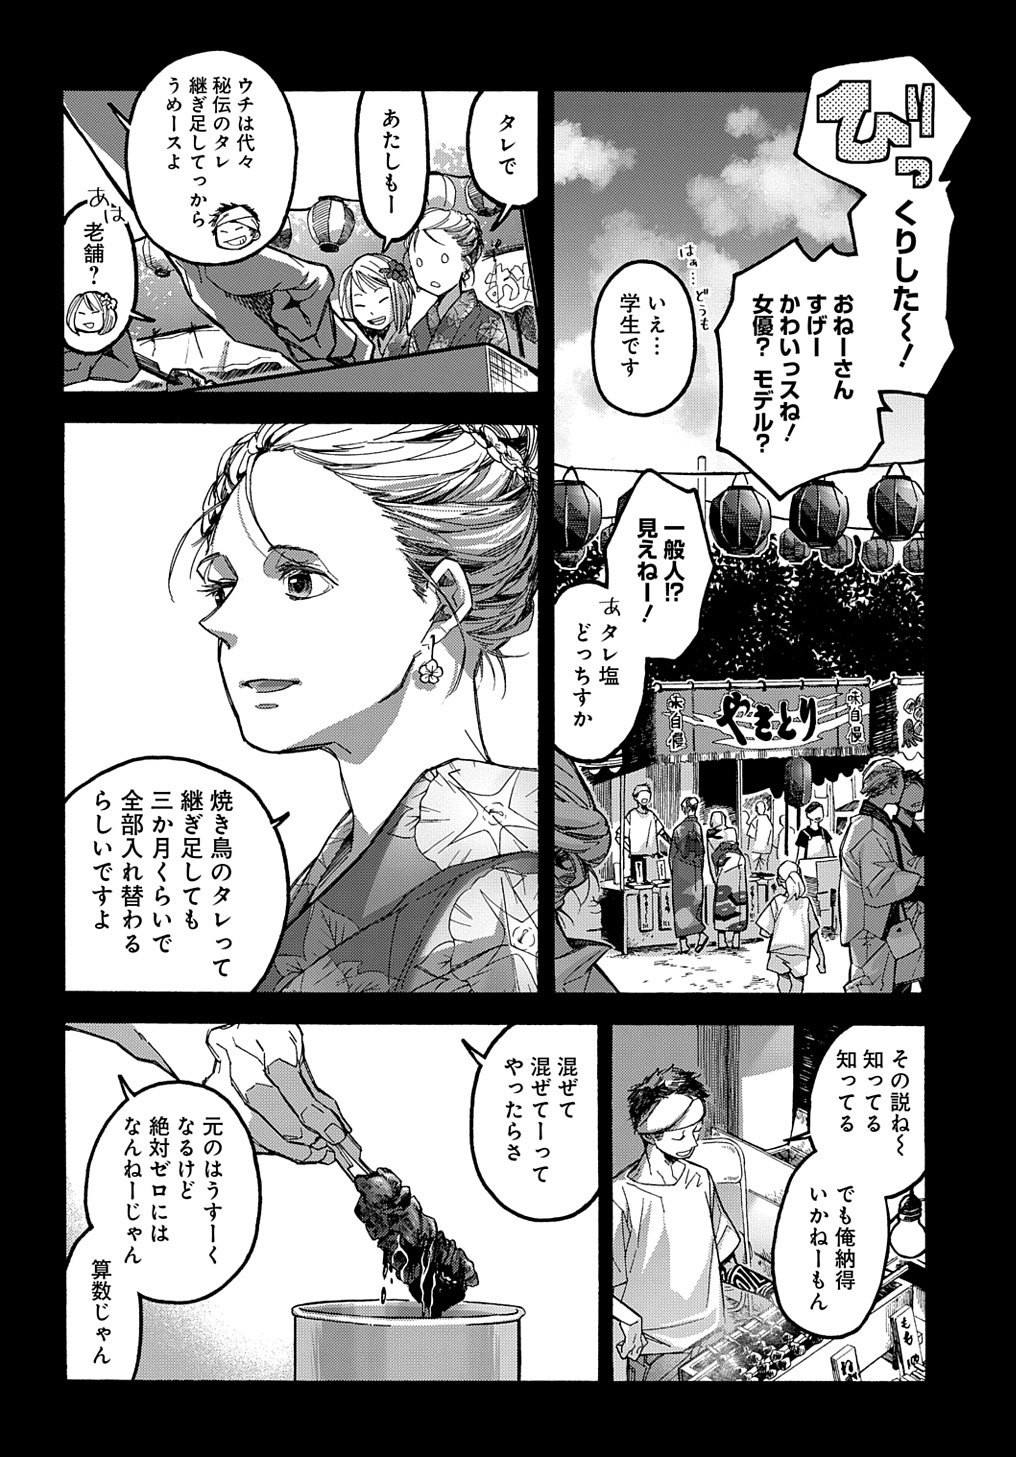 Uraura Hikaru: Shinshin ni Mitsu - Chapter 11 - Page 2